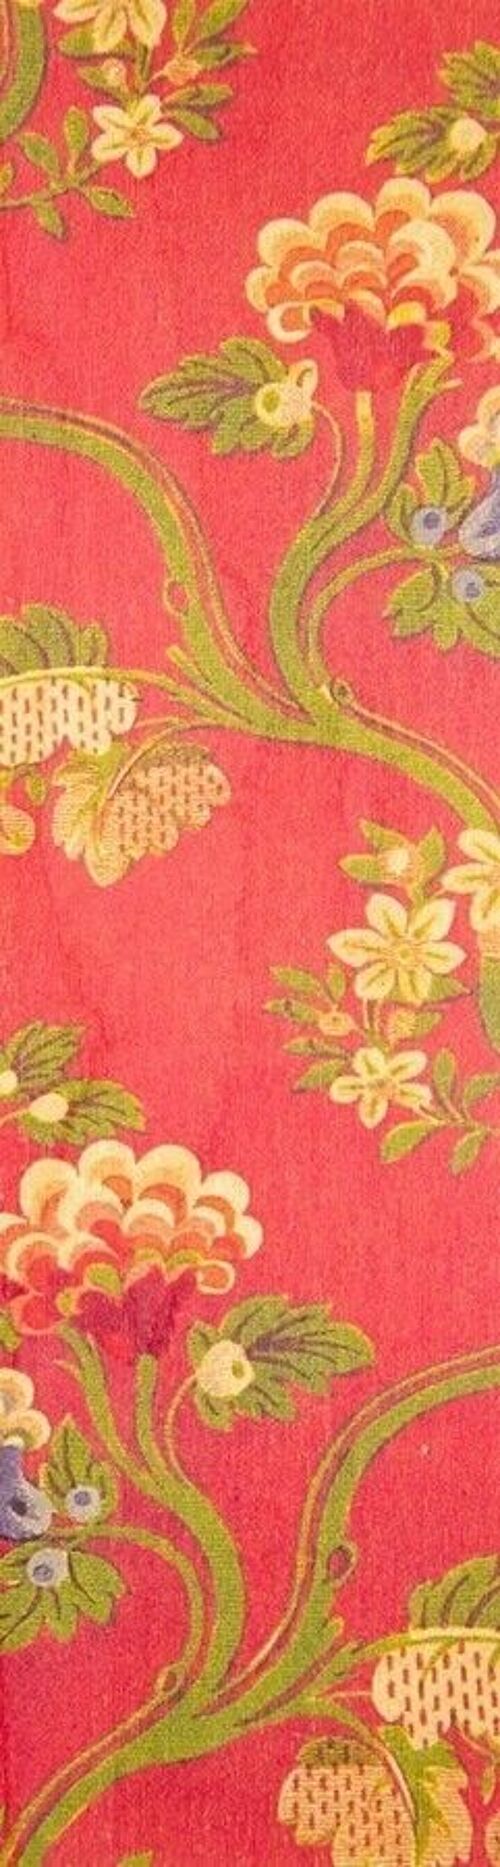 Marque-pages en bois- patterns rouge